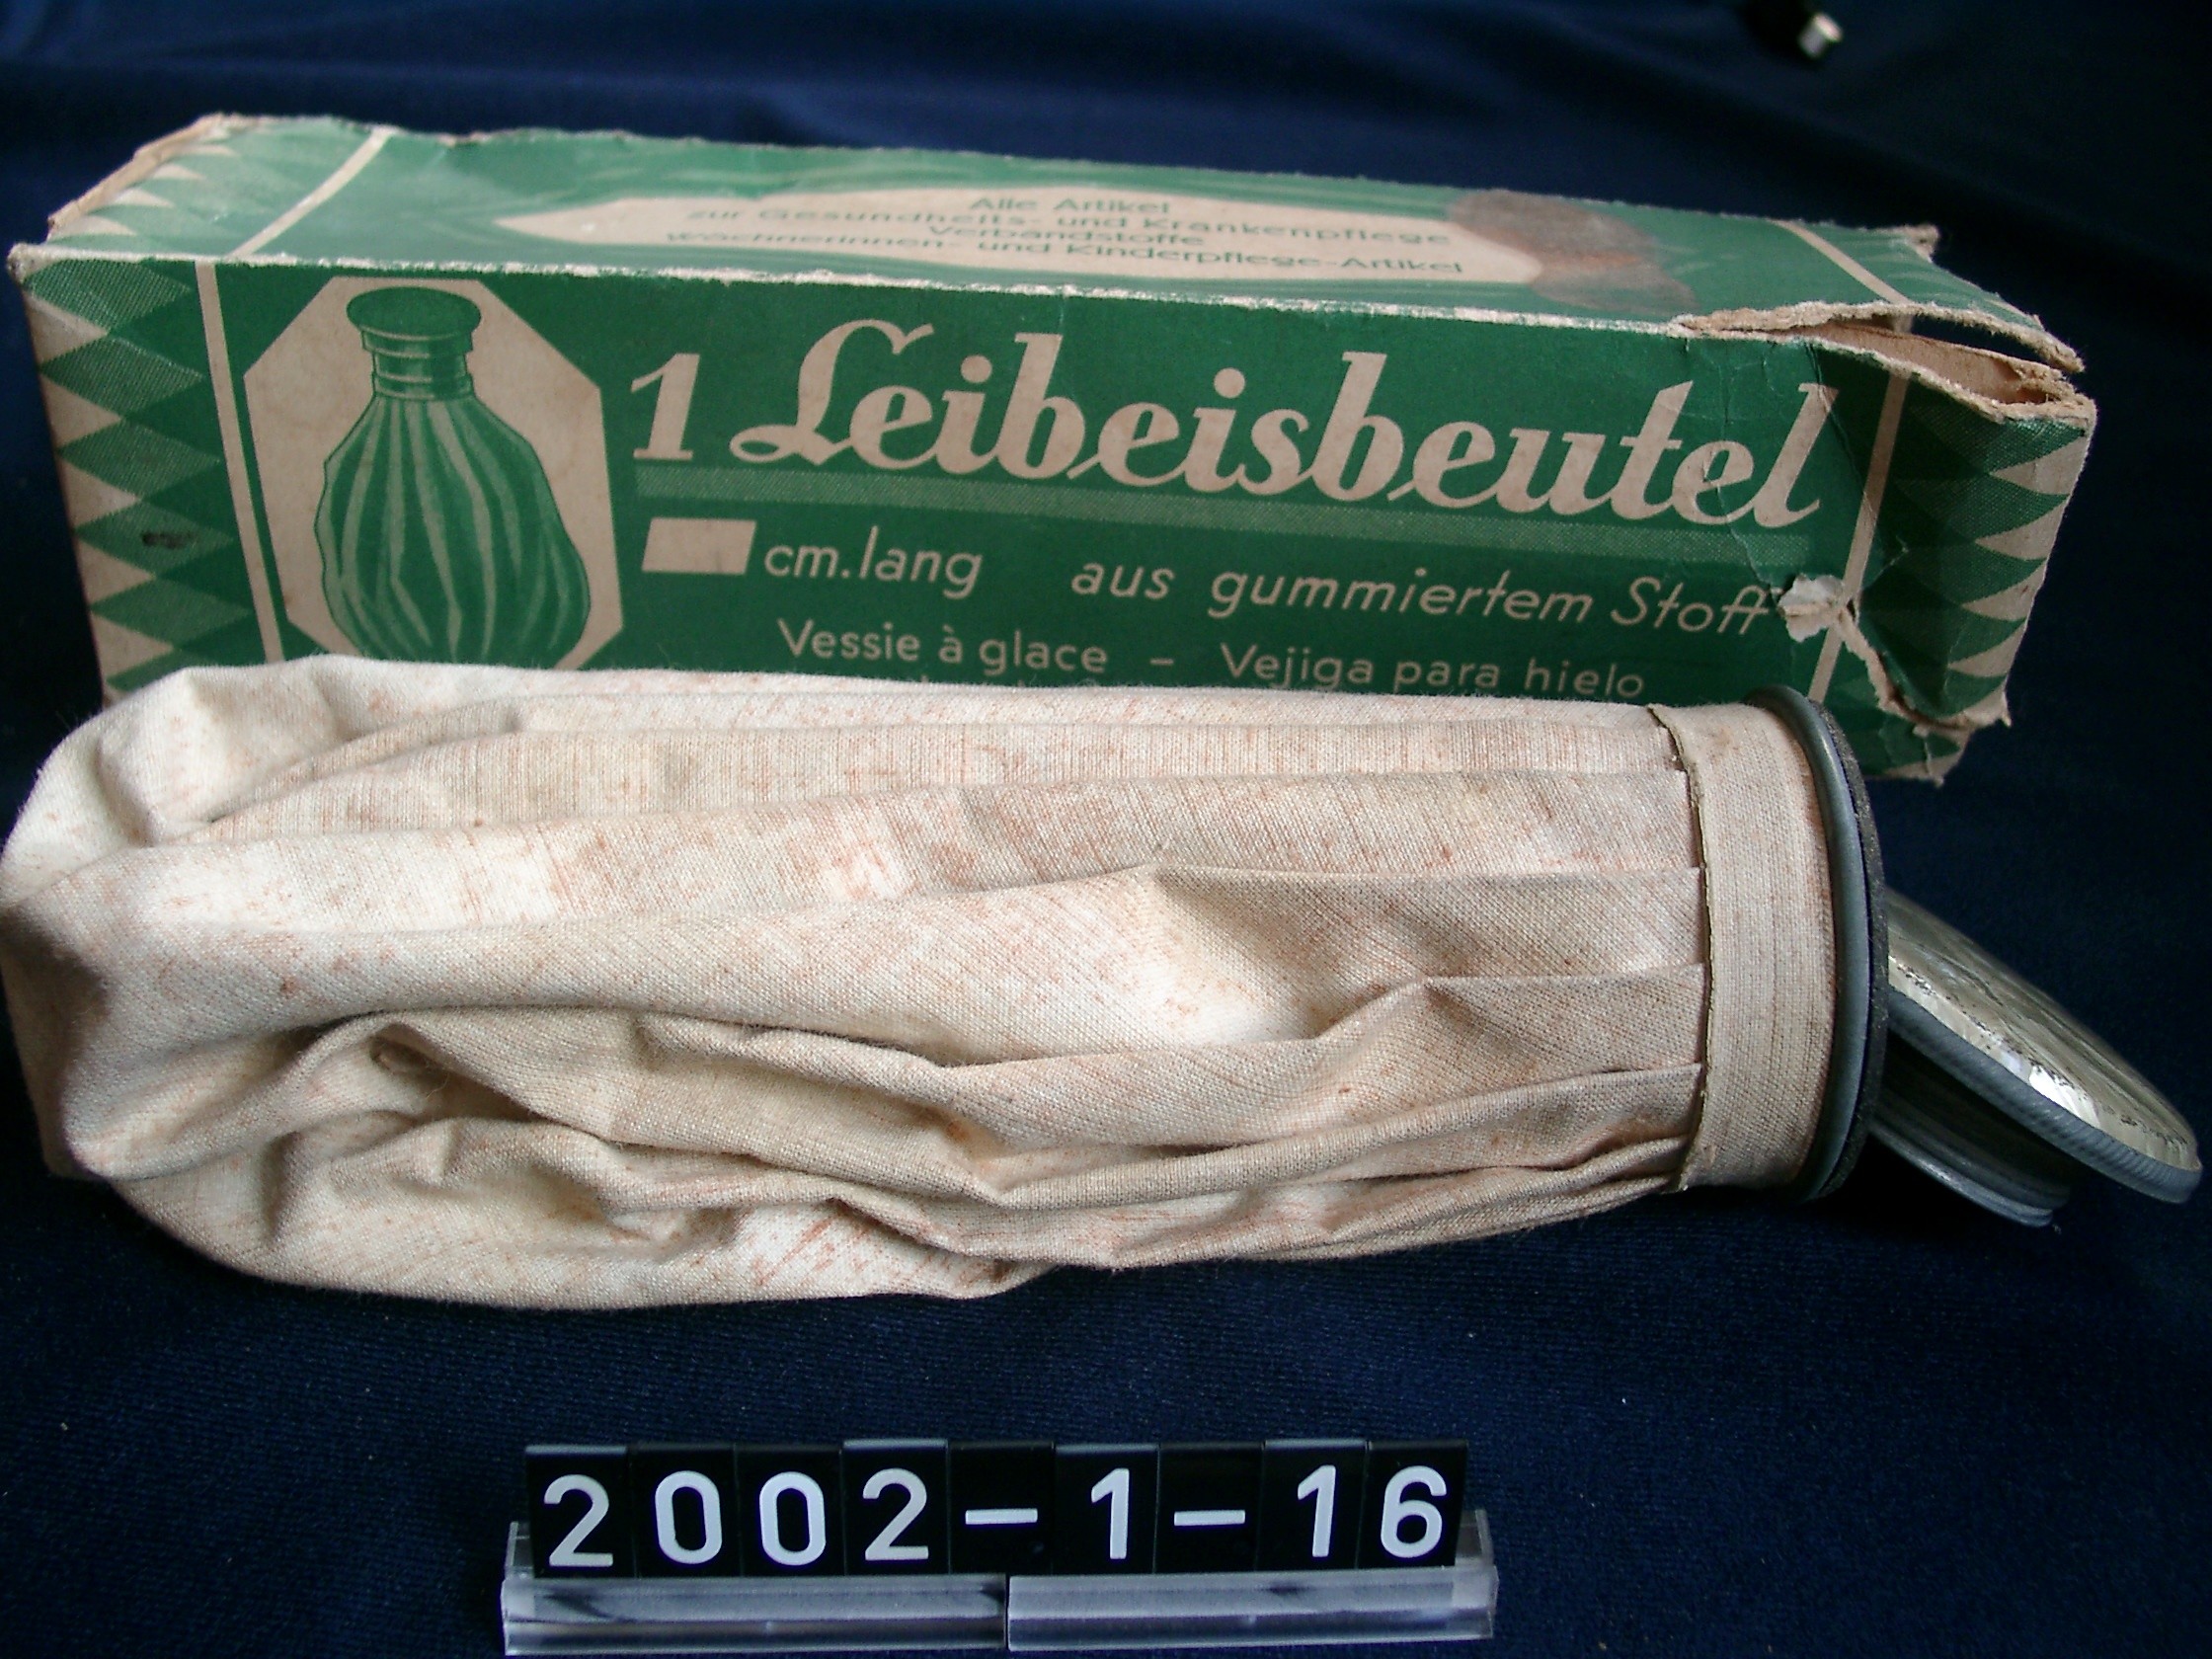 Leibeisbeutel in Orginalverpackung; 20. Jh. (Stadtmuseum Bad Dürkheim, Museumsgesellschaft Bad Dürkheim e.V. CC BY-NC-SA)